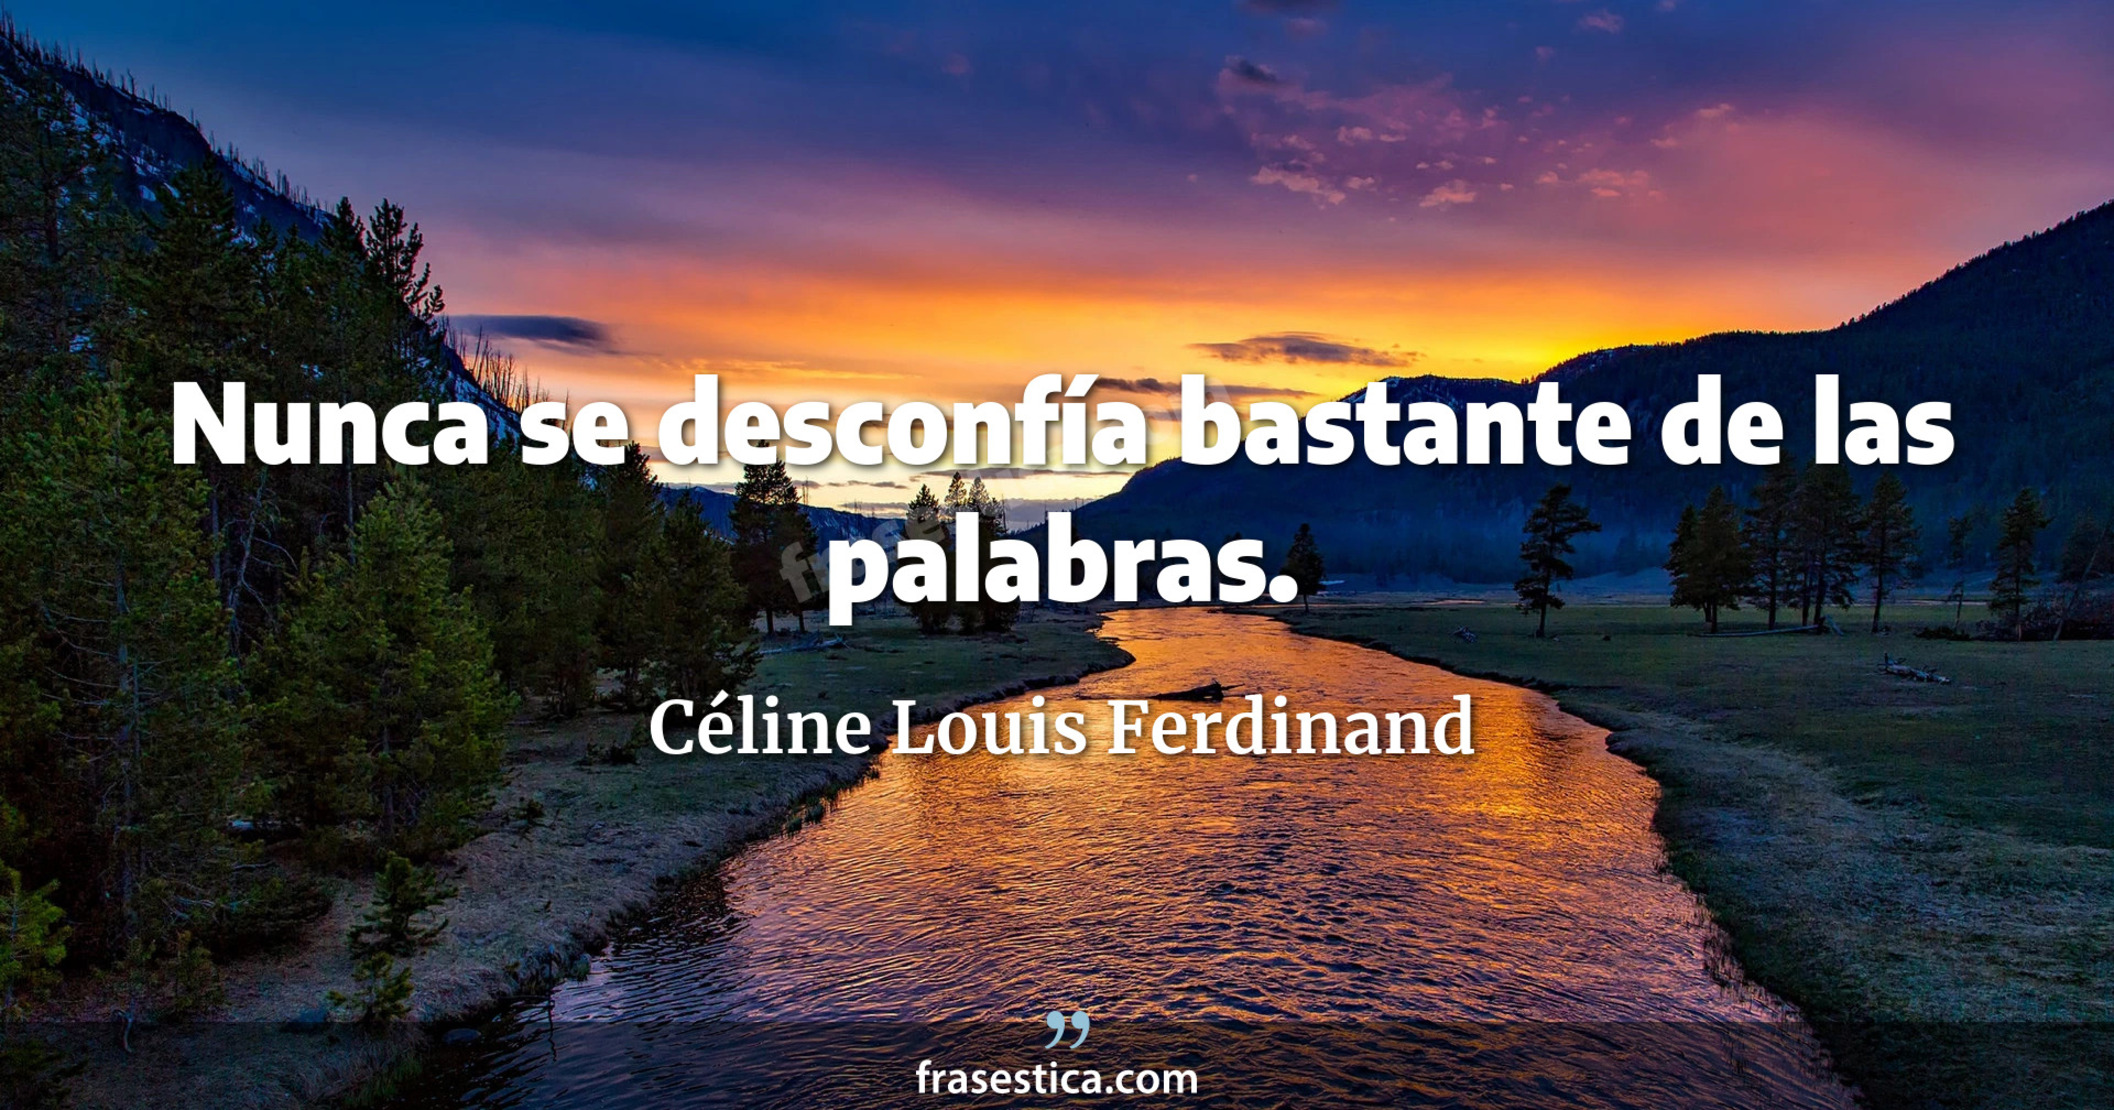 Nunca se desconfía bastante de las palabras. - Céline Louis Ferdinand